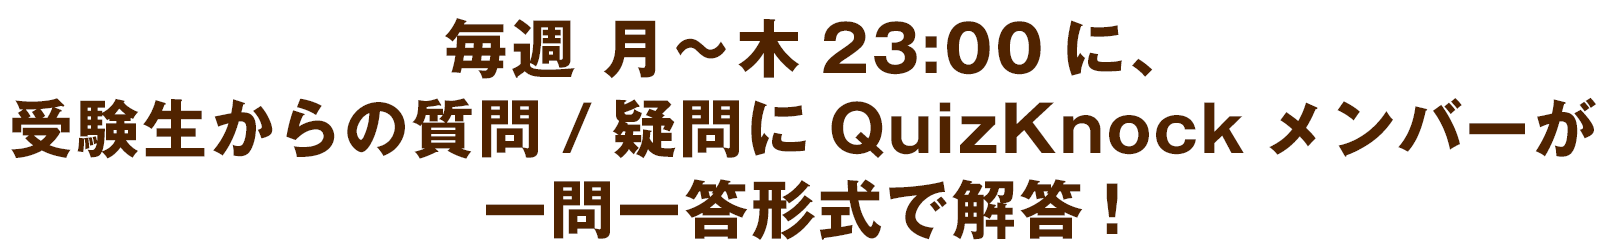 毎週 月〜木23:00に、
受験生からの質問/疑問にQuizKnockメンバーが一問一答形式で解答!